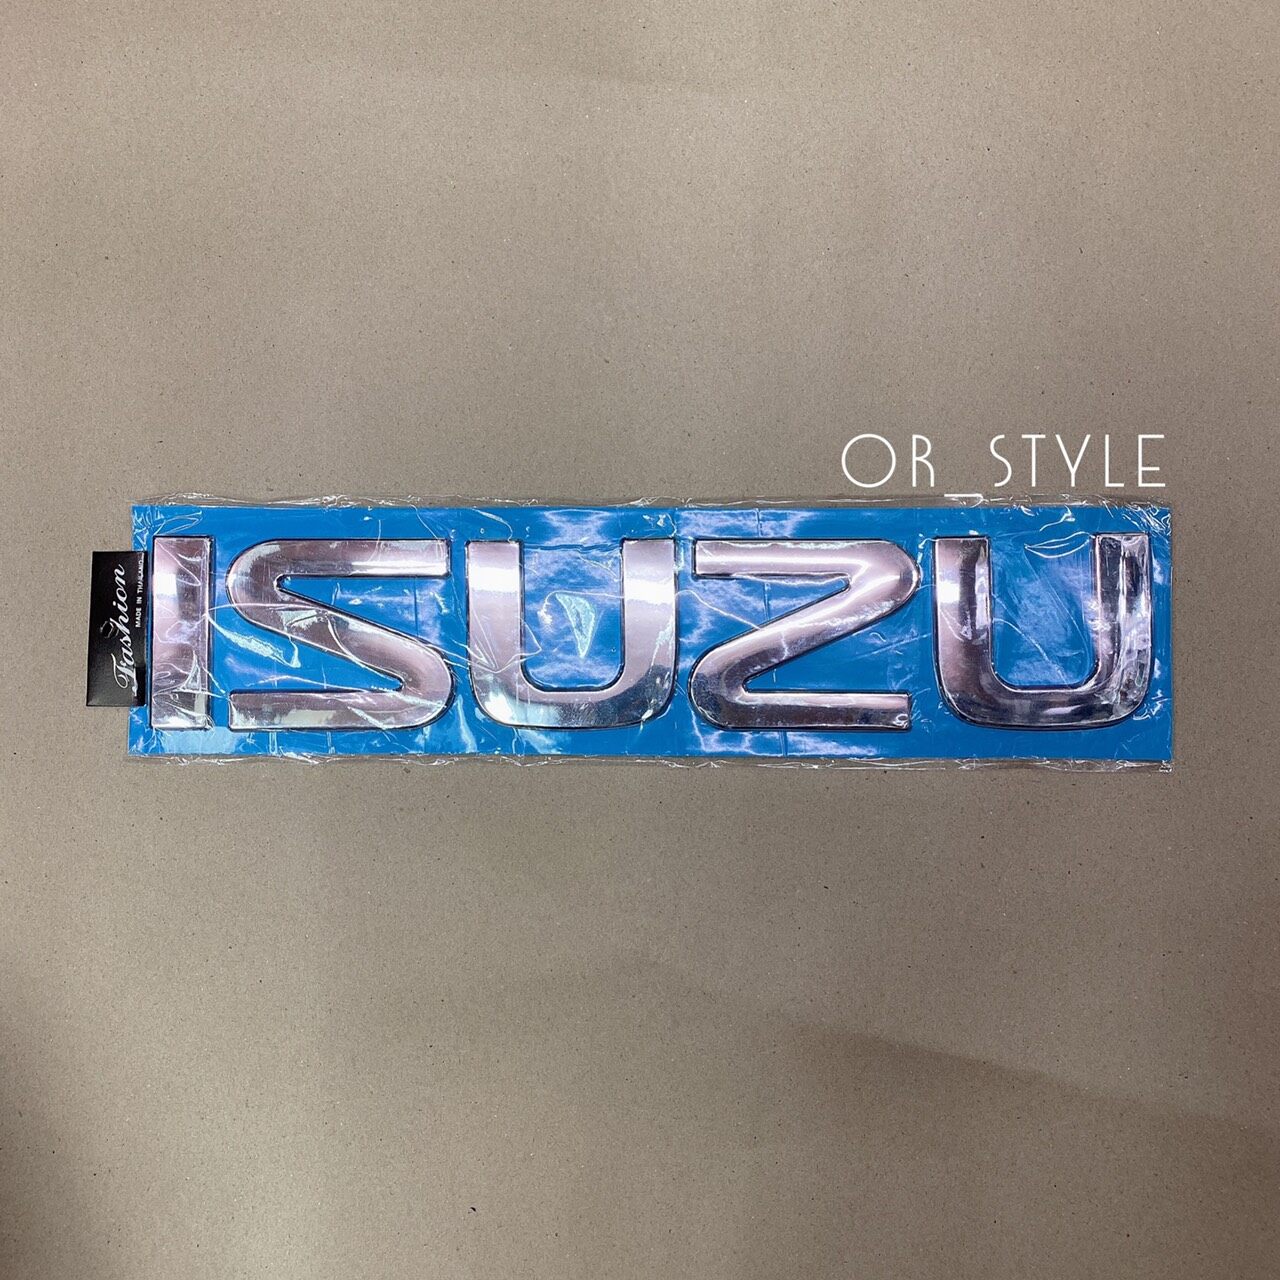 โลโก้ ISUZU ตัวอักษรเเยก ขนาด 39.5x8cm สีโครเมียม